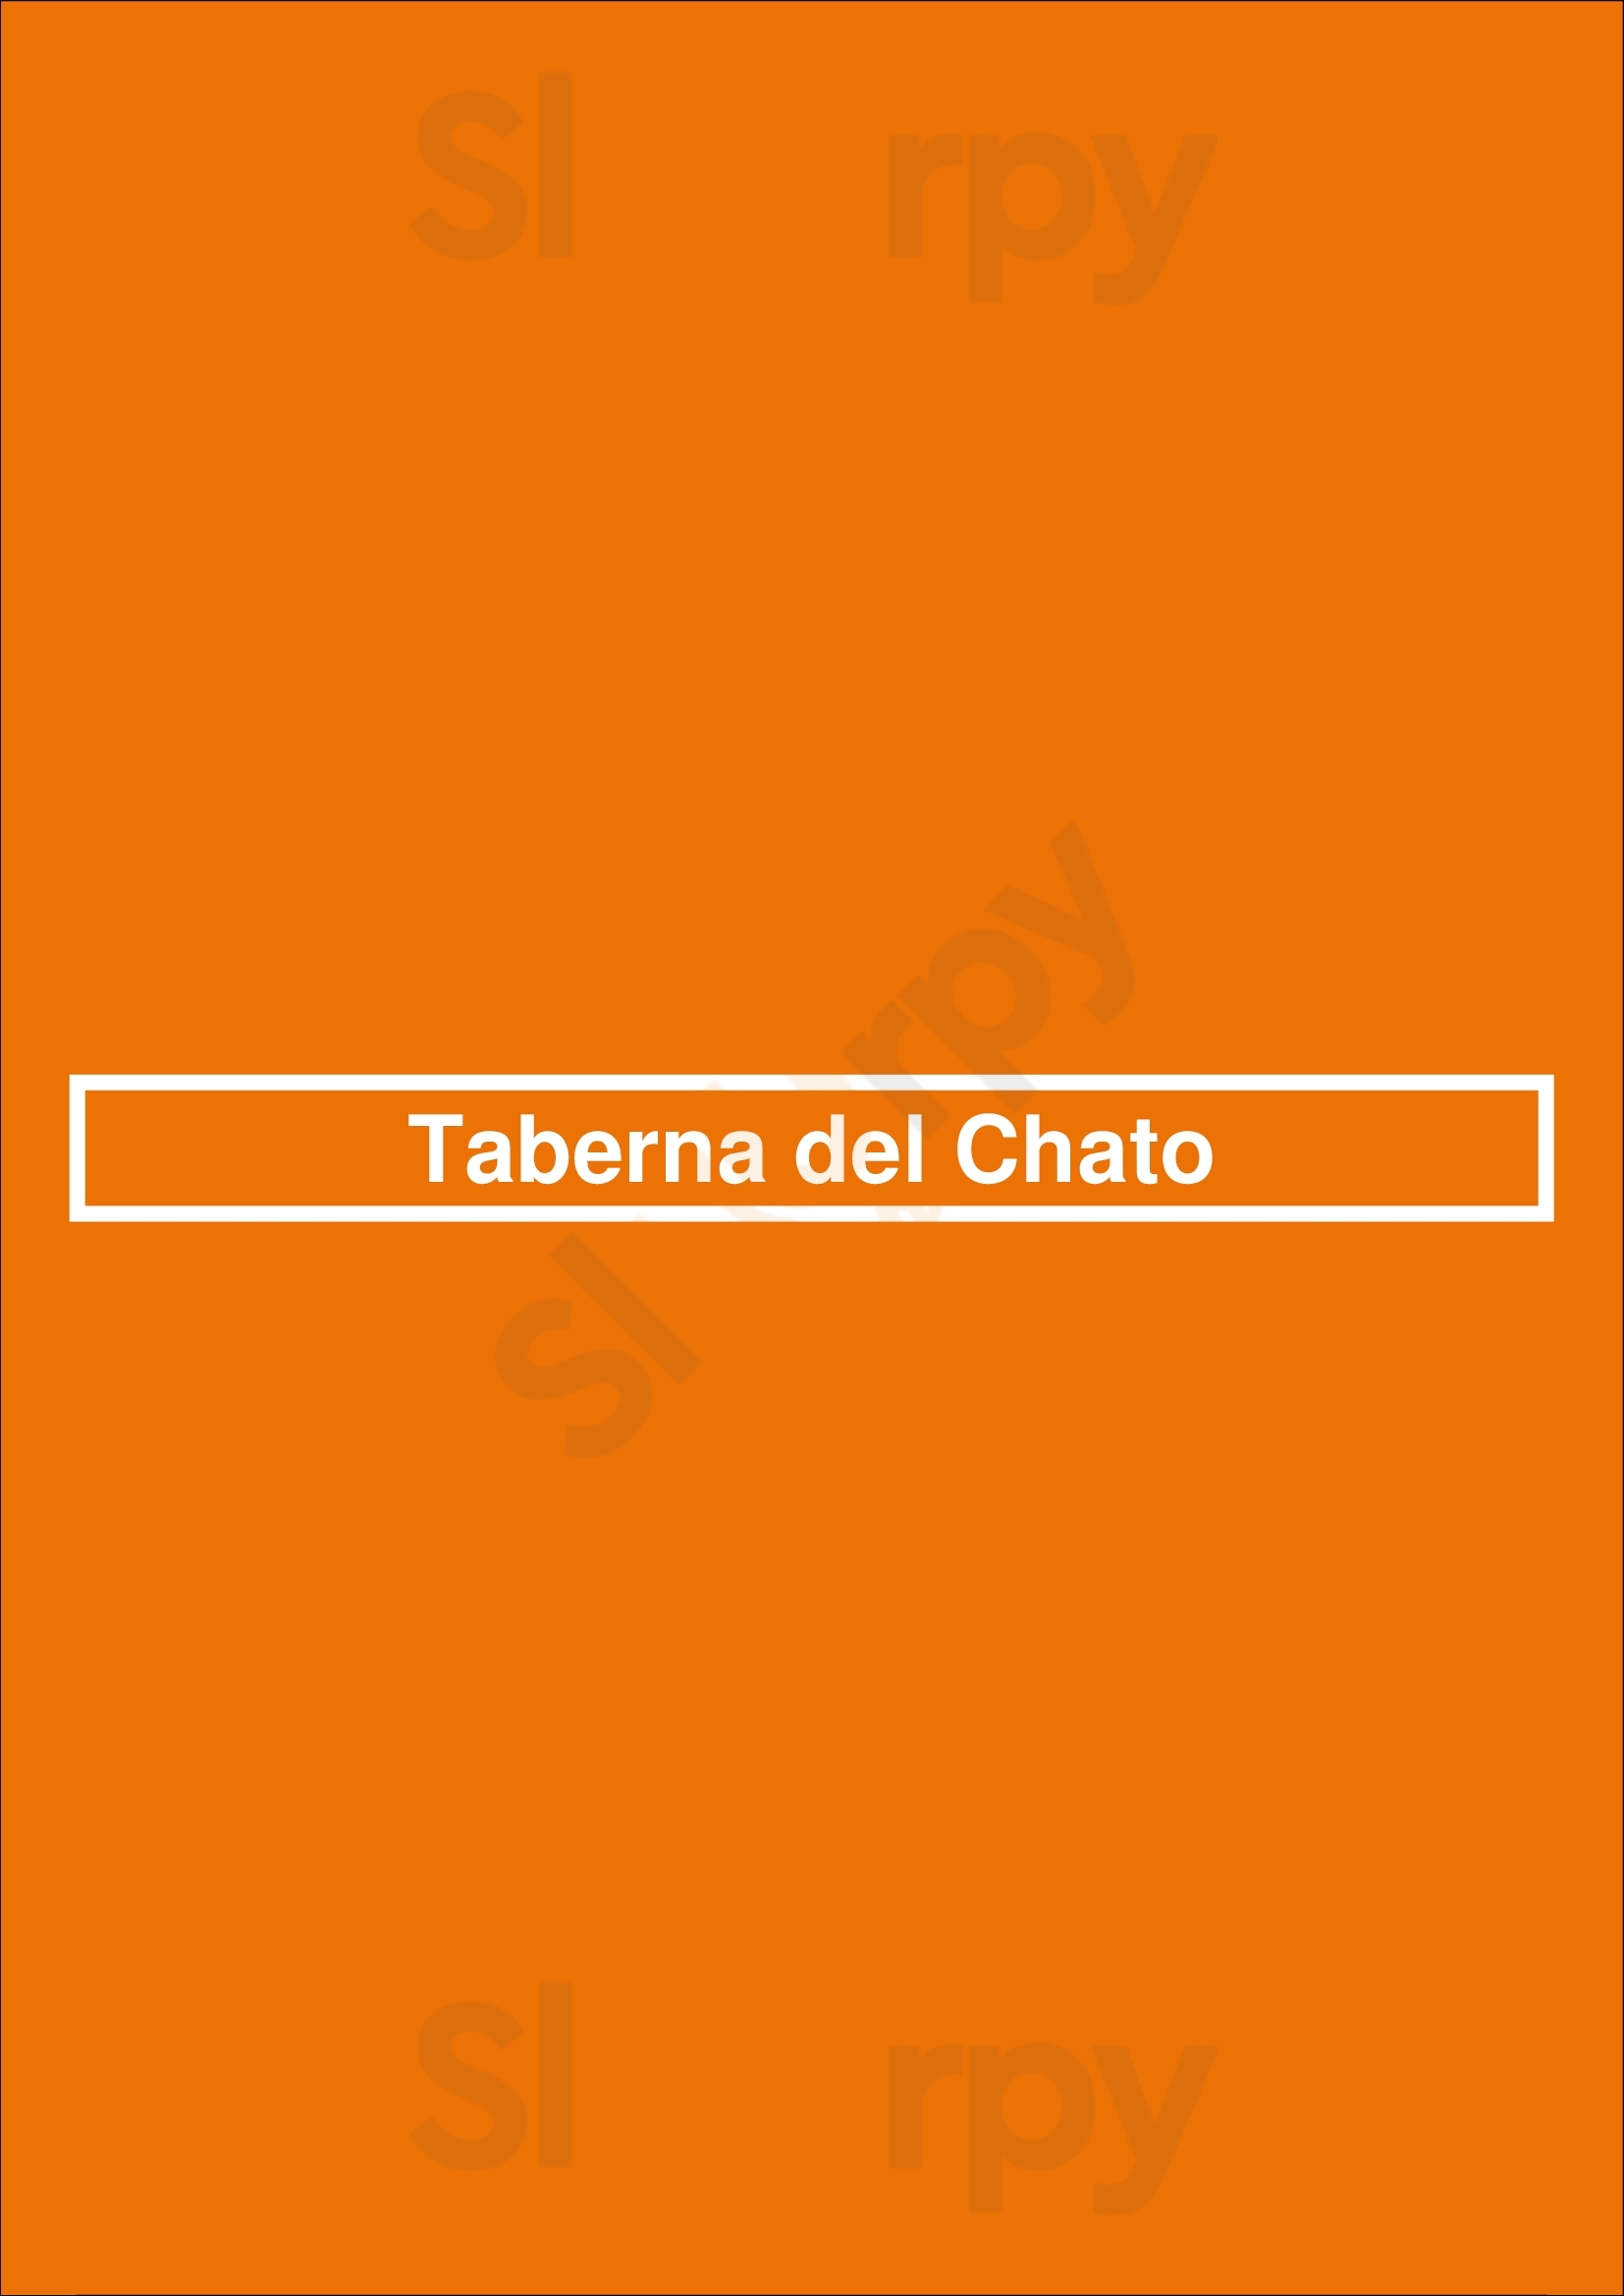 Taberna Del Chato Madrid Menu - 1